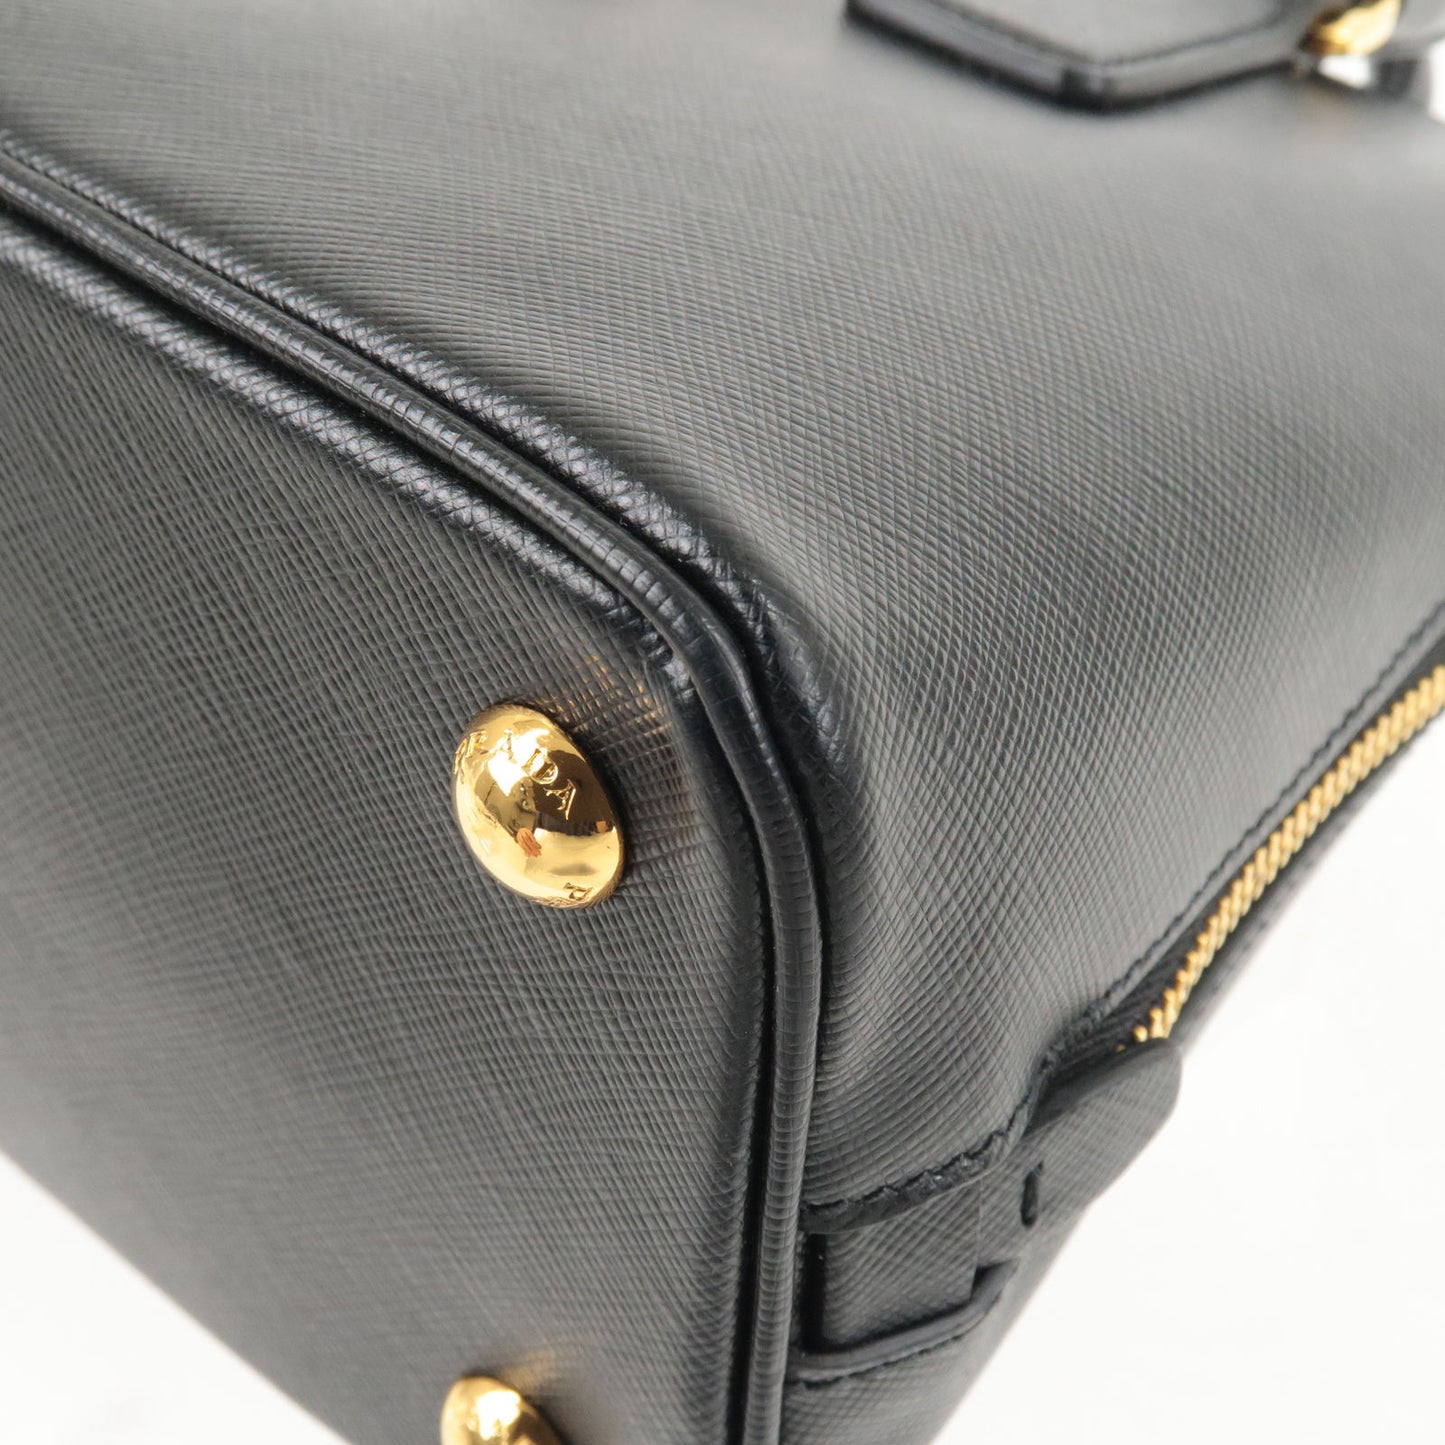 Saffiano Bowler Bag with Strap Black (Nero)